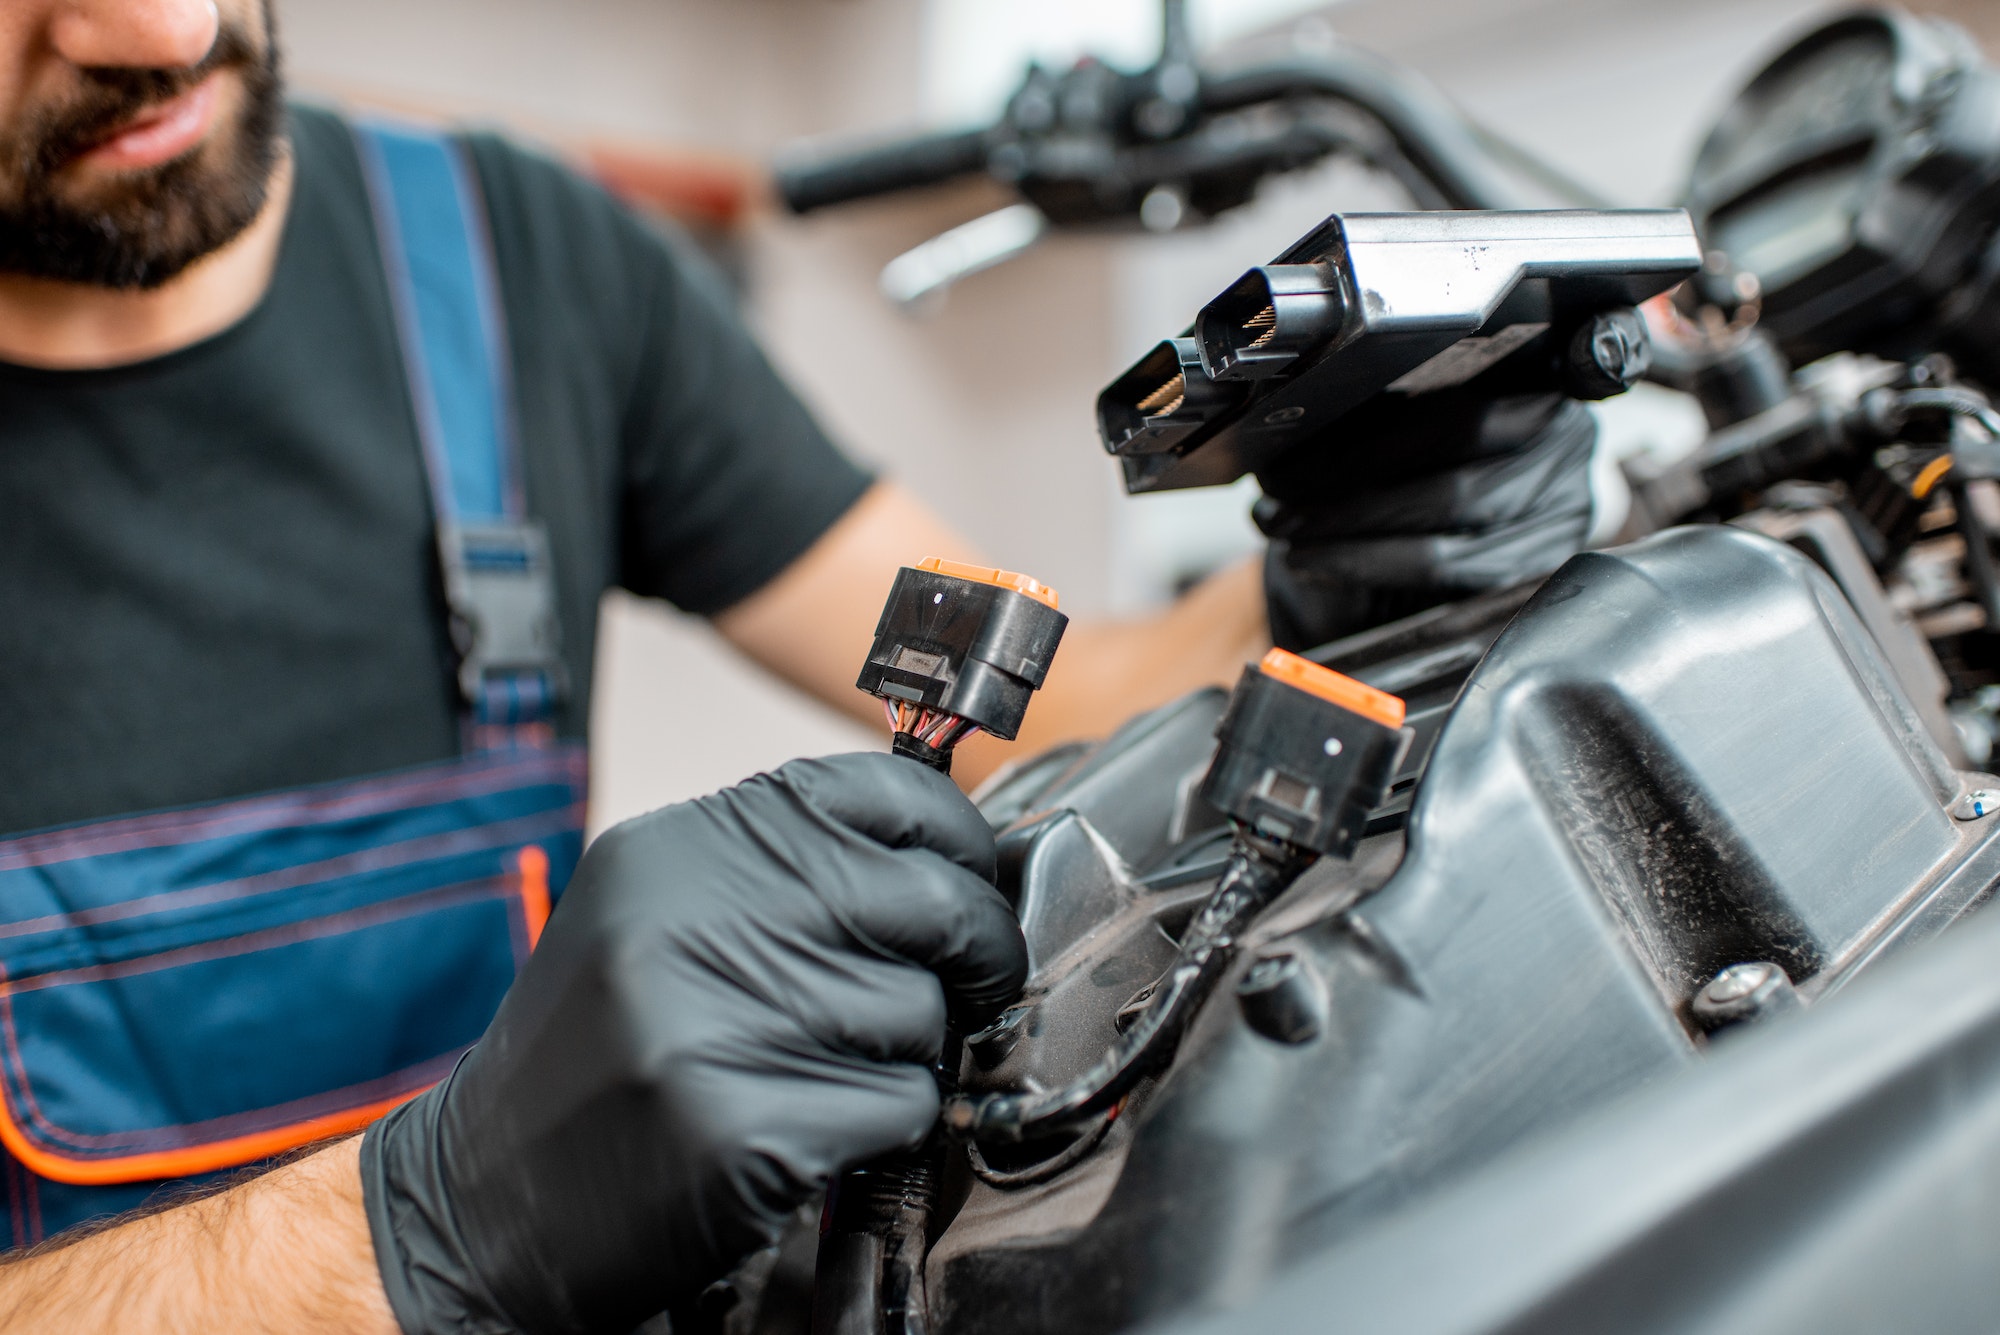 Electrician repairing motorcycle wiring